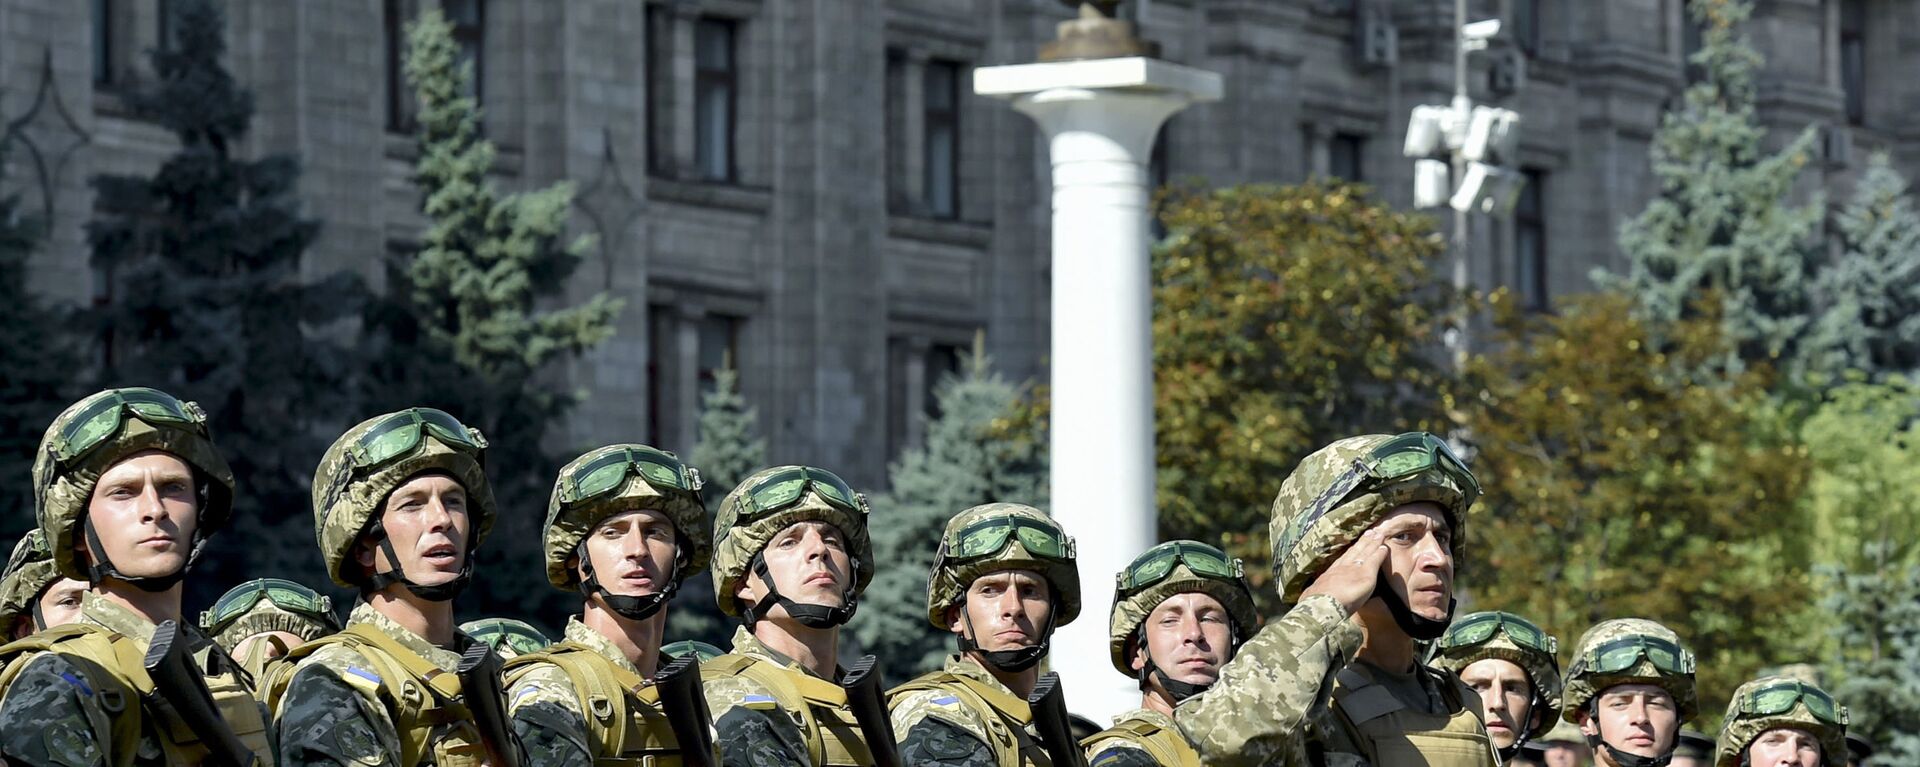 Военнослужащие ВСУ на марше в честь Дня Независимости в Киеве - Sputnik Latvija, 1920, 20.08.2021